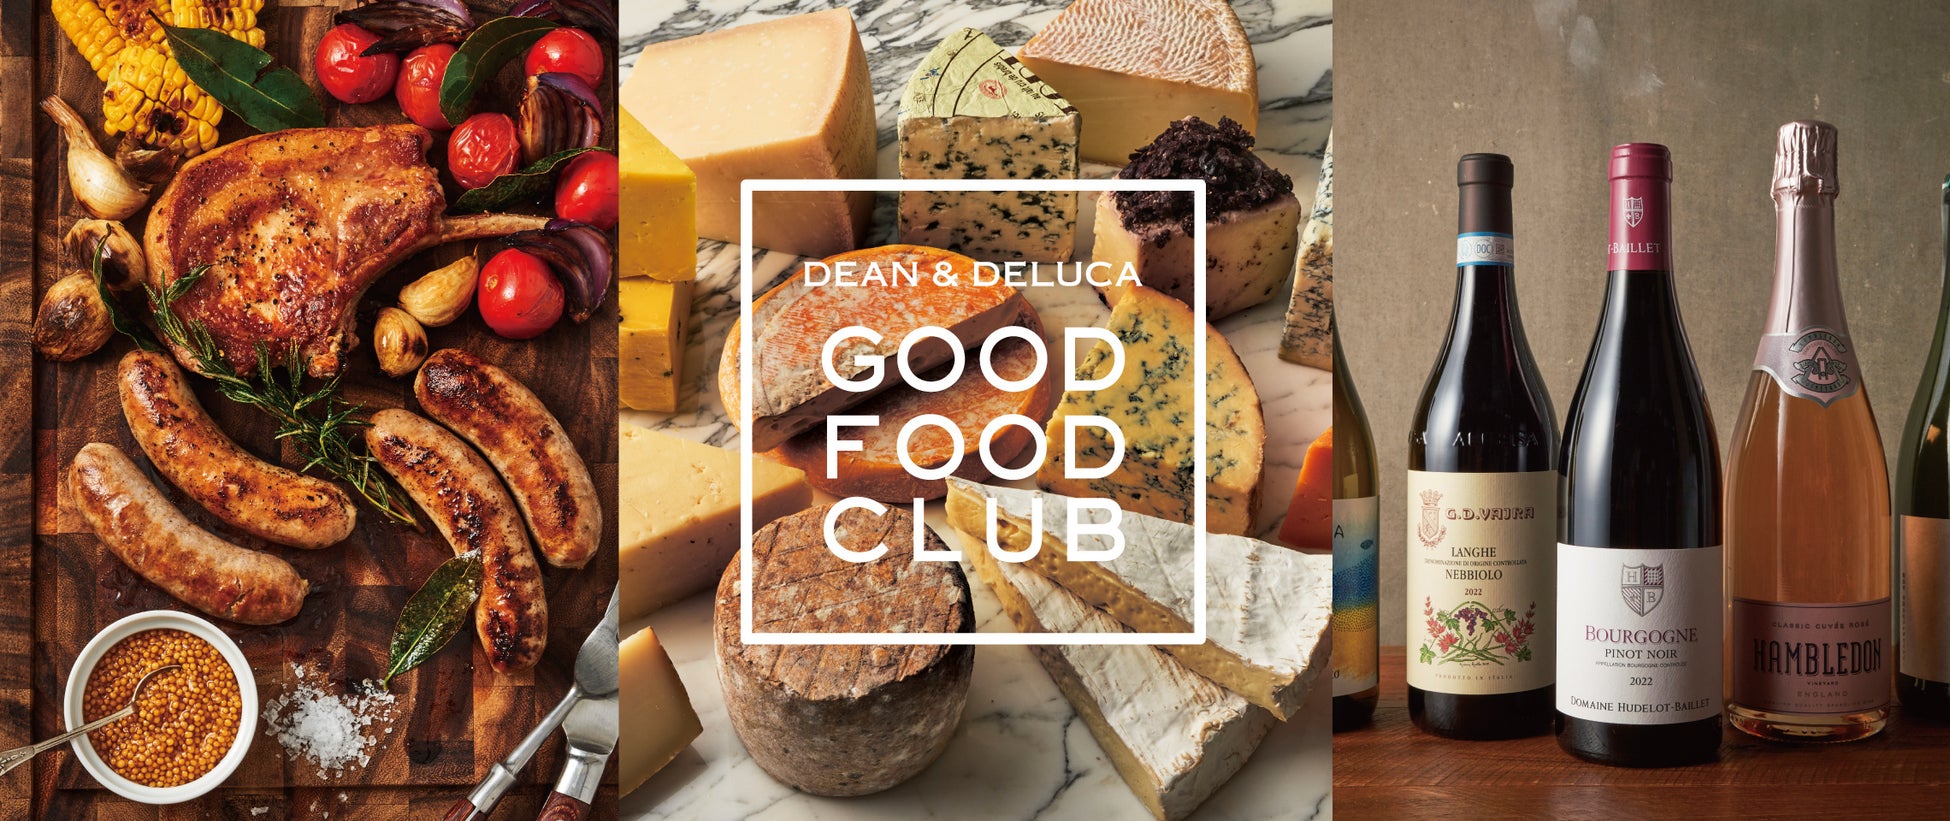 【DEAN & DELUCA】厳選したスペシャリティフードを毎月お届けする頒布会「GOOD FOOD CLUB」がスタート